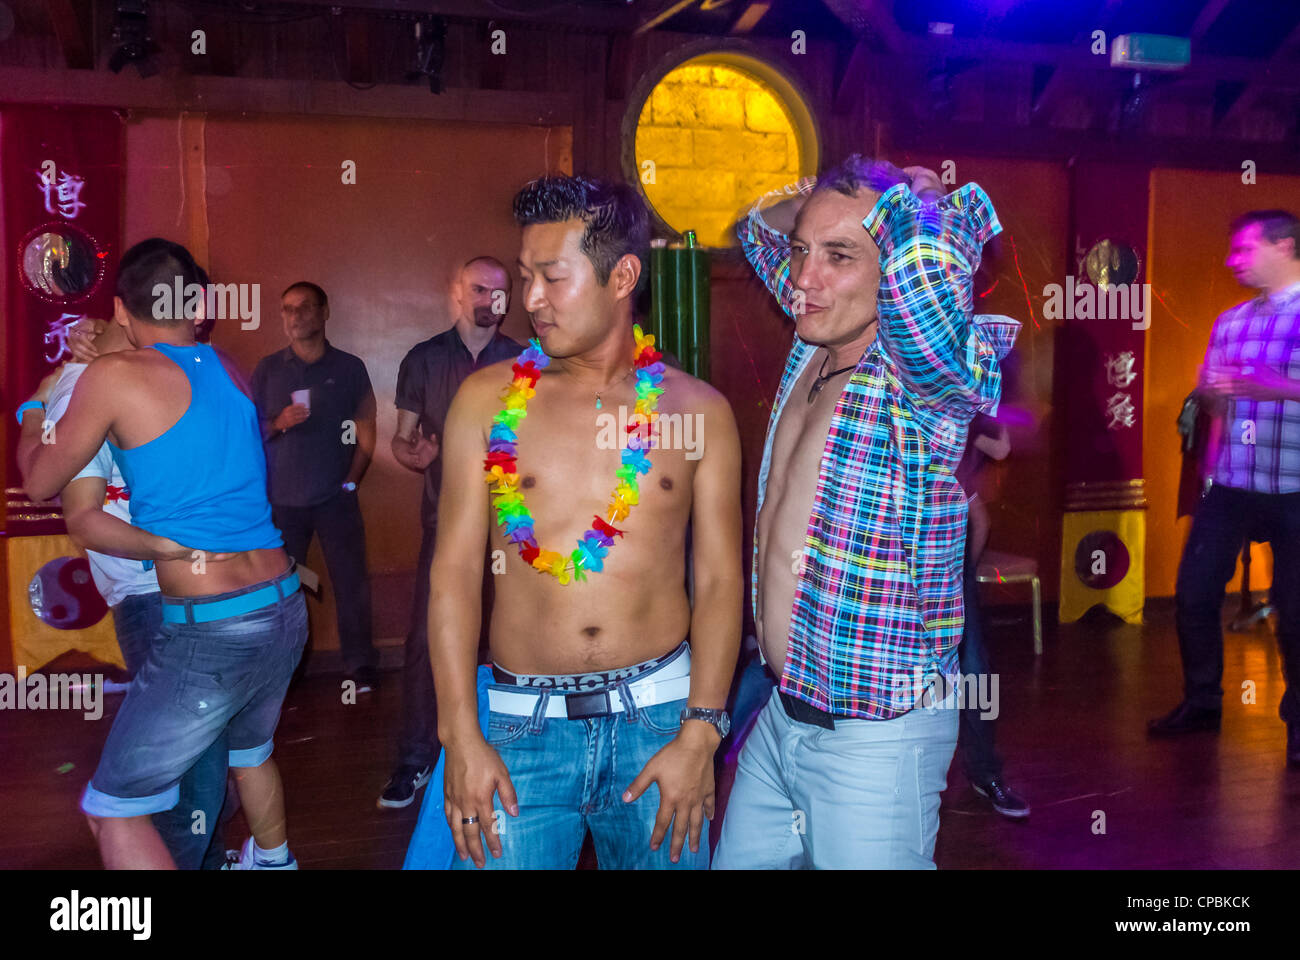 France In Chandigarh Gay Club